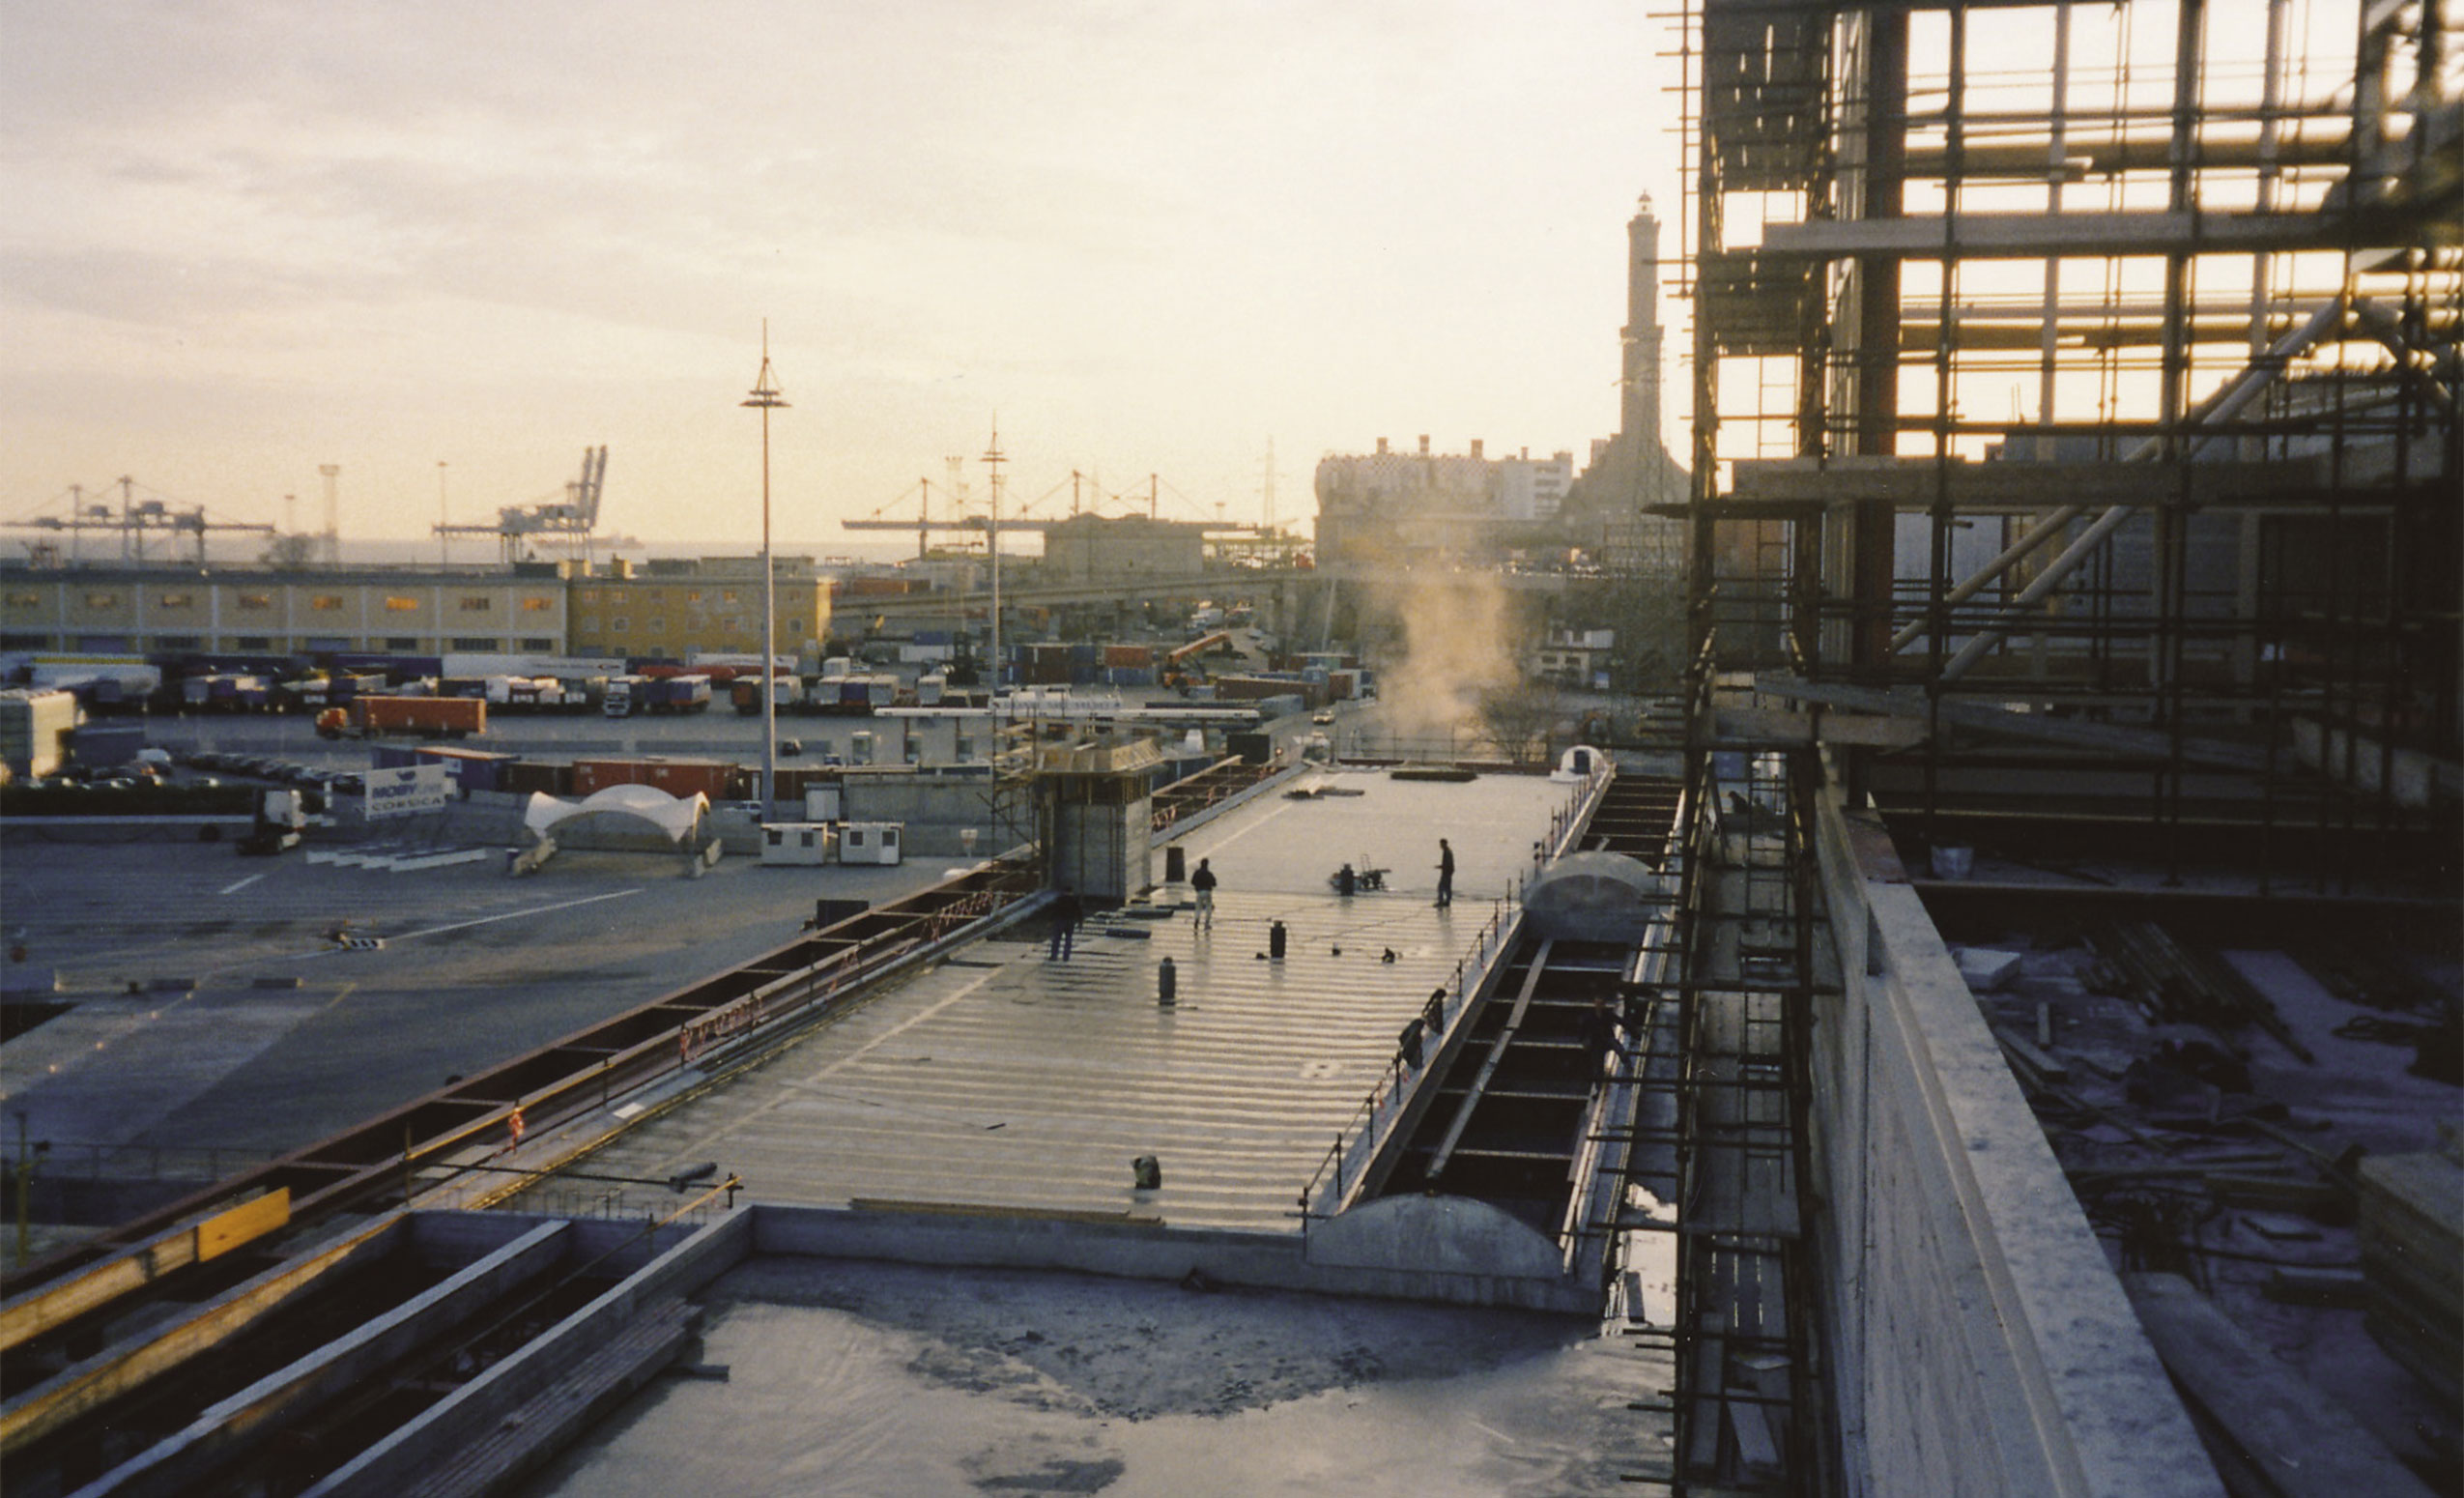 Stazioni Marittime SpA. Porto di Genova, Ponte Assereto. Costruzione nuovo Terminal Traghetti